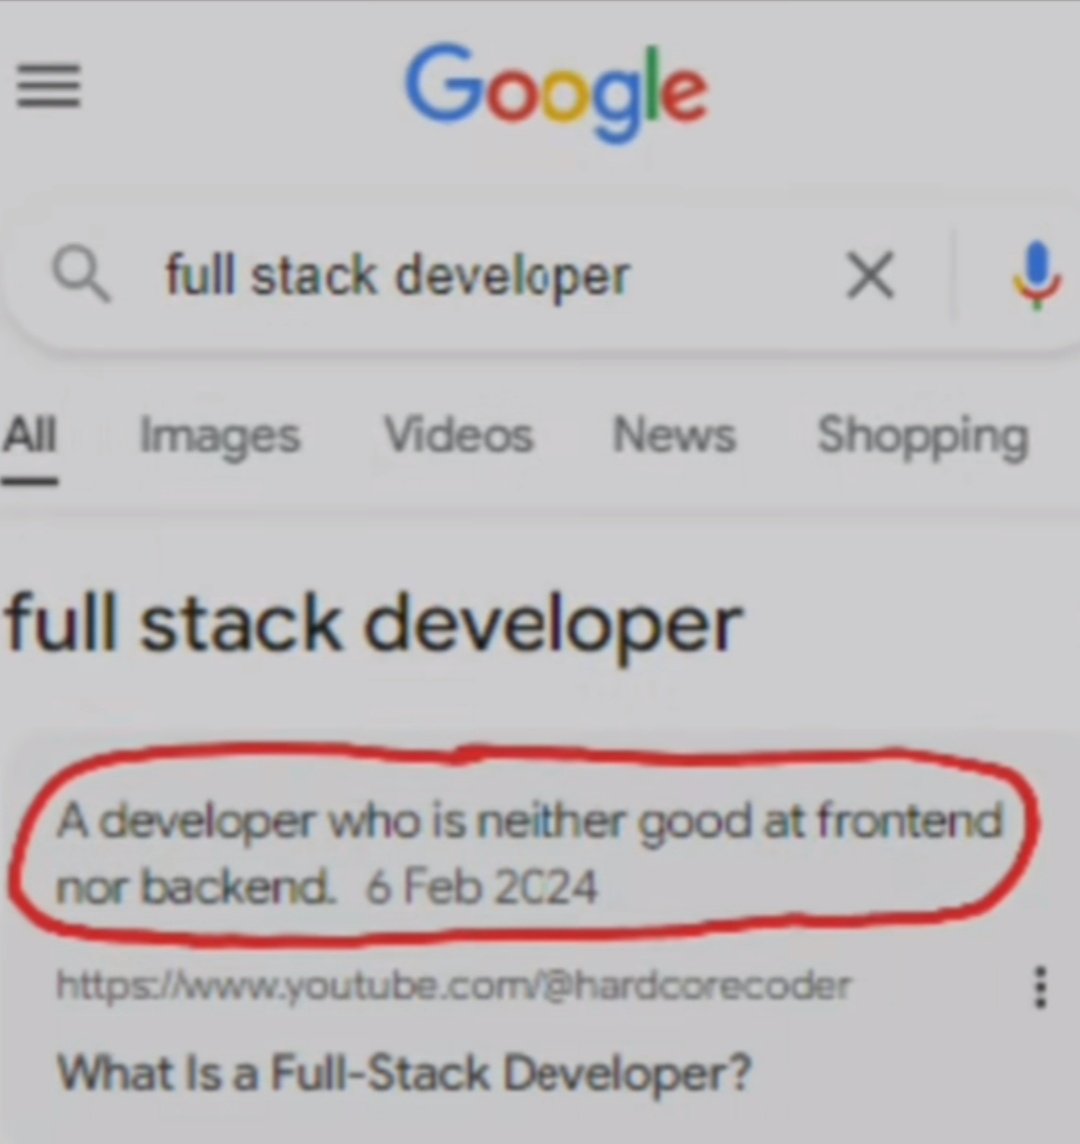 Full stack developer 😂
#coding #fullstackdeveloper #codinglife #corporatememes